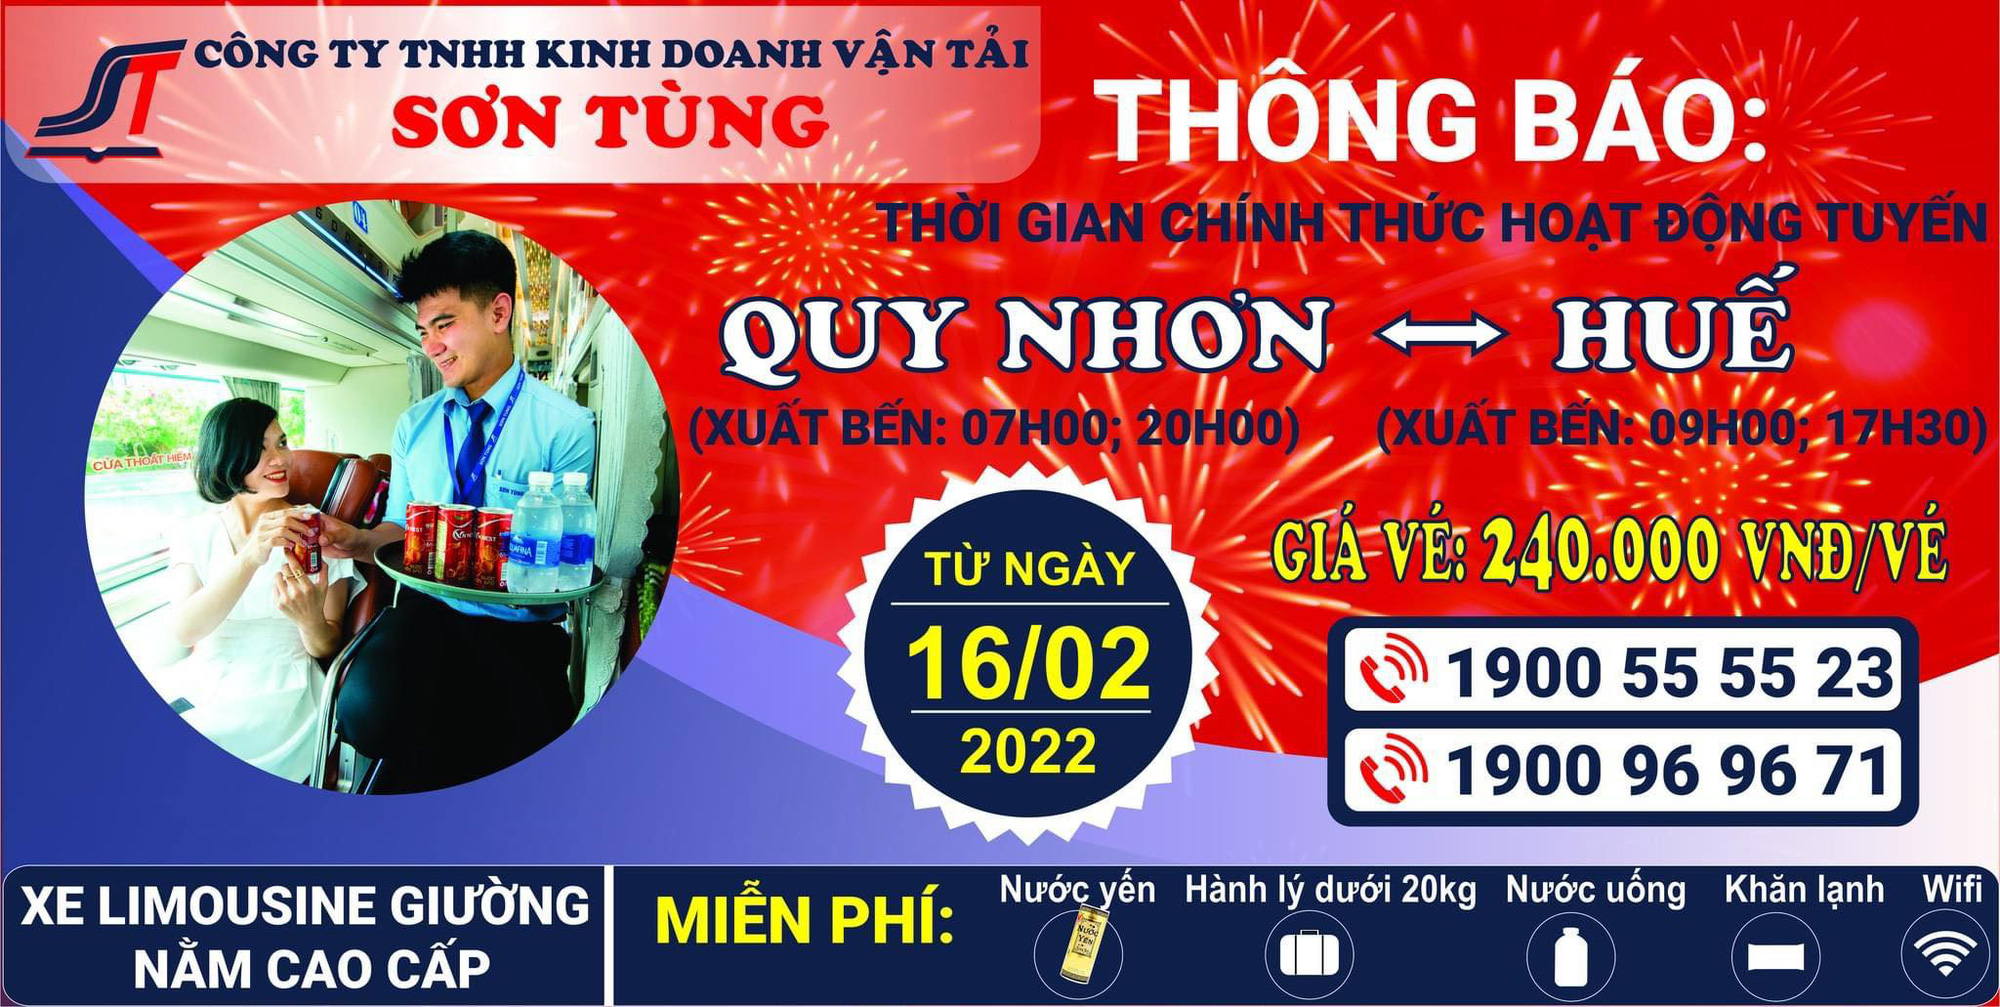 Nhà xe lớn nhất tuyến Quy Nhơn – Đà Nẵng lần đầu tiên mở tuyến đến Huế - Ảnh 1.